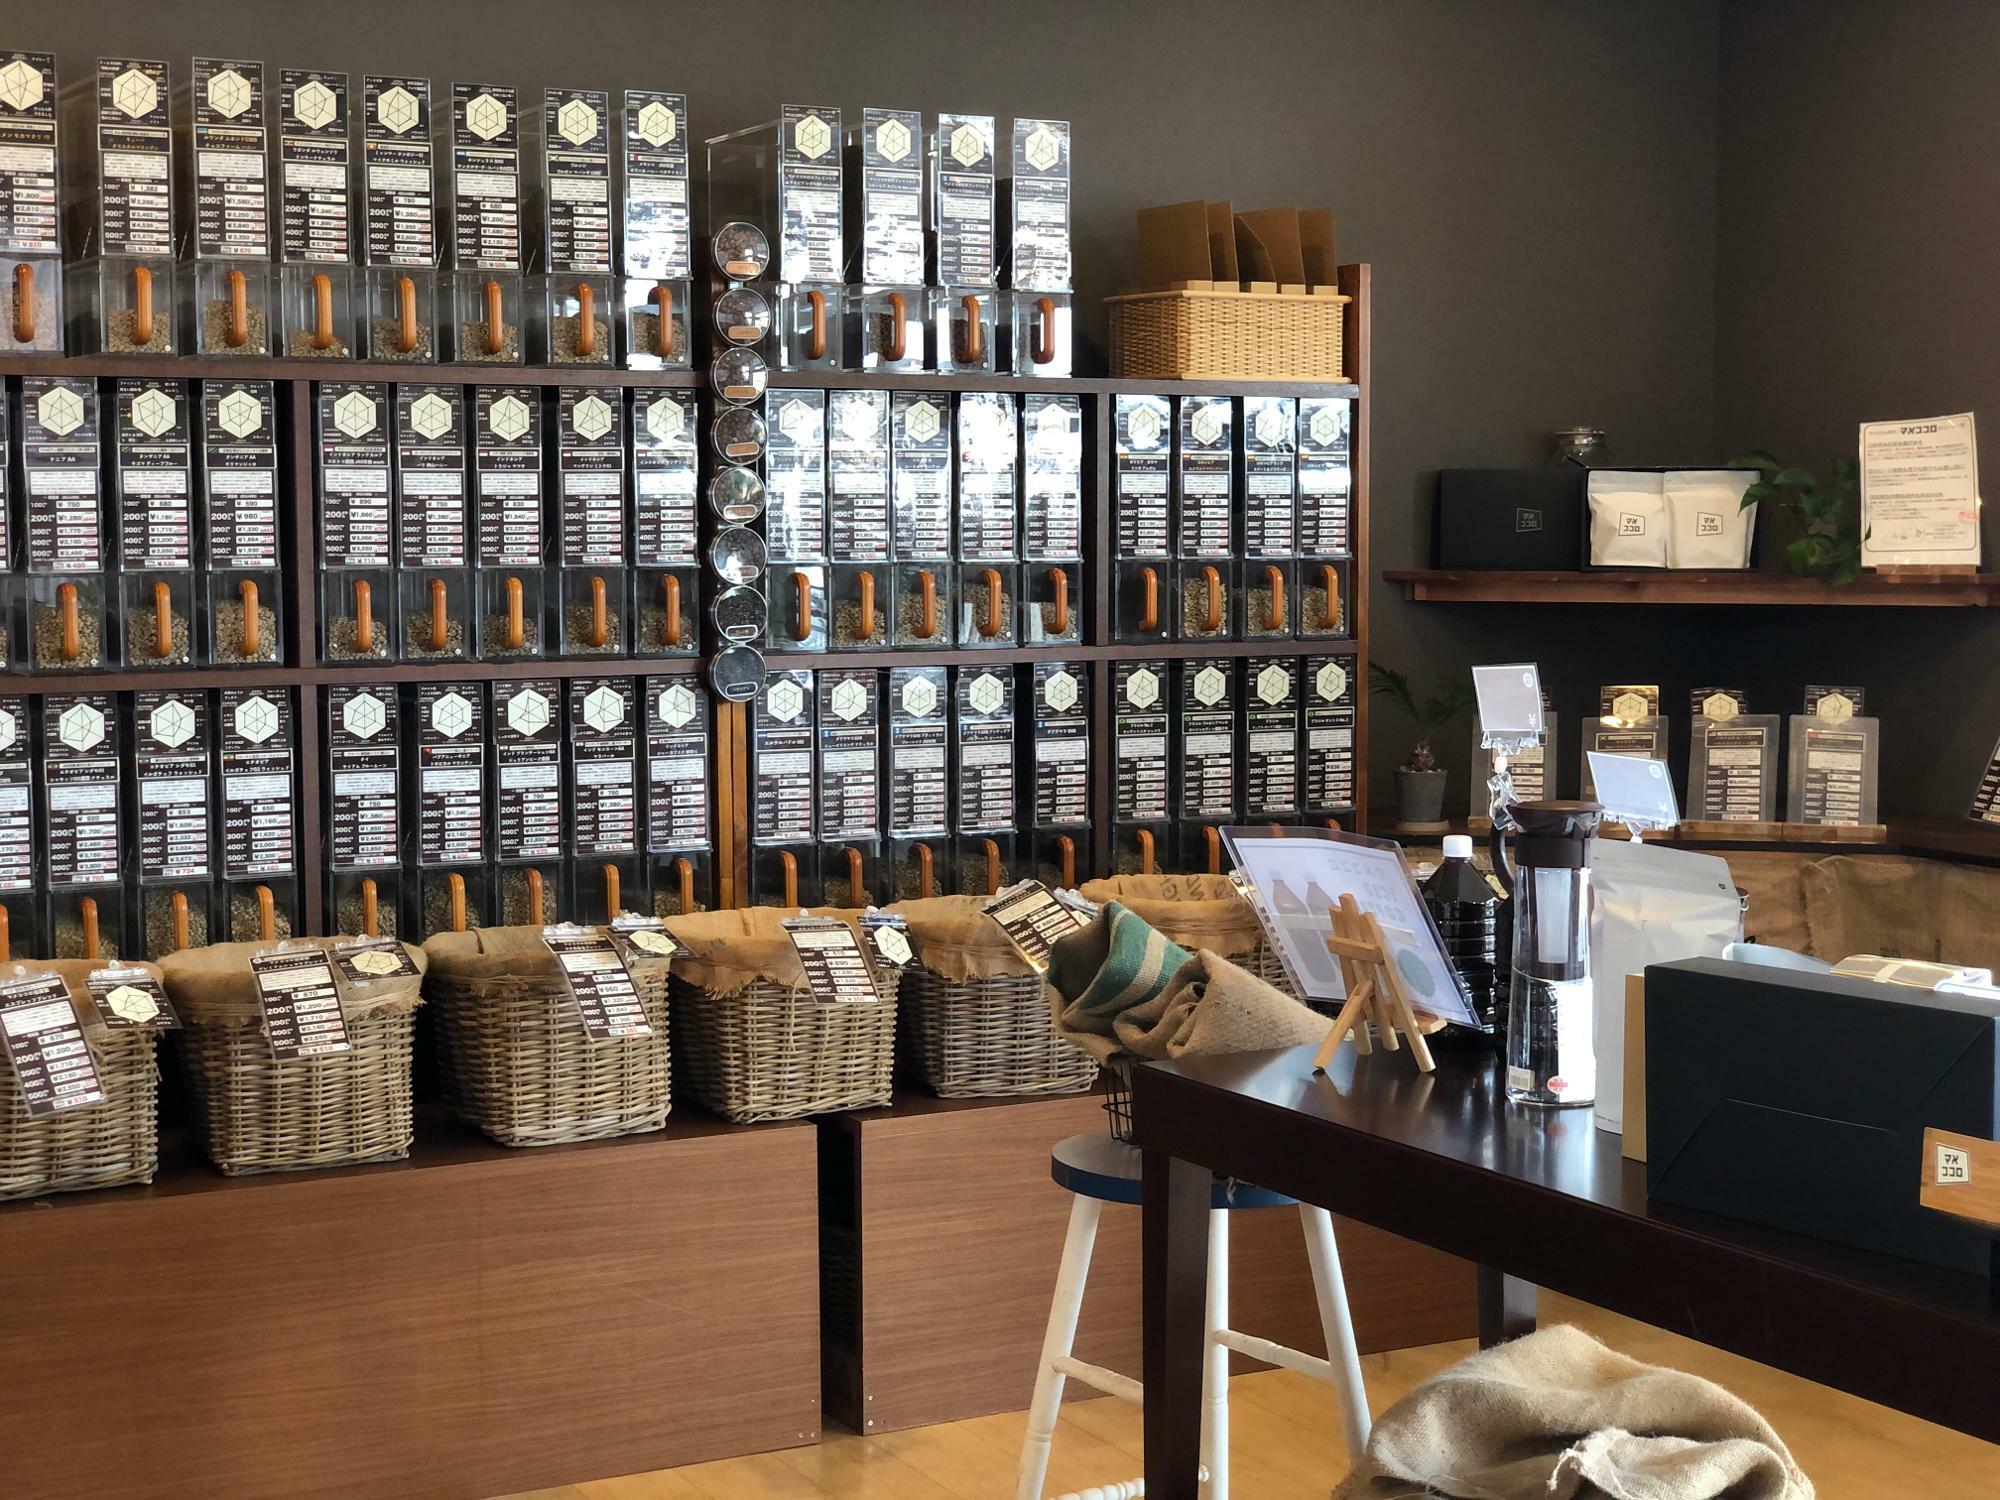 『マメココロ 学園の森店』さん店内。種類豊富なコーヒー豆が並んでいます。